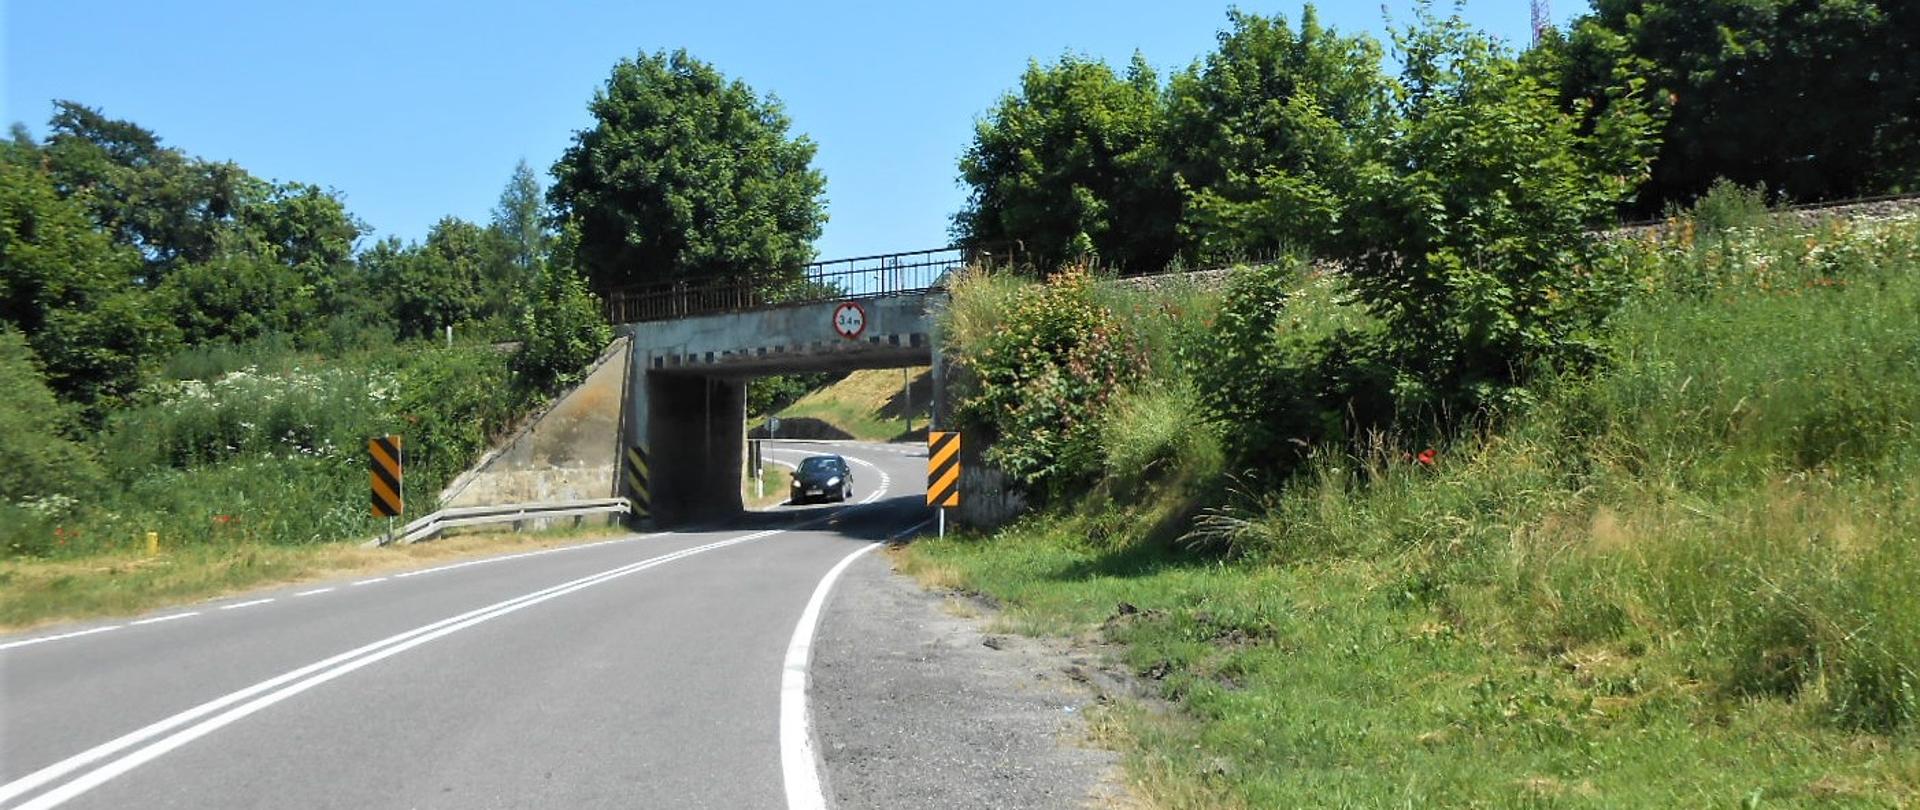 Zdjęcie przedstawia drogę krajową nr 55 w Brachlewie z samochodem osobowy przy wiadukcie z linią kolejową nr 207. Skrajnia drogi jest ograniczona Istniejącym wiaduktem, który jest zbyt wąski i niski, by przejeżdżały nim samochody ciężarowe.